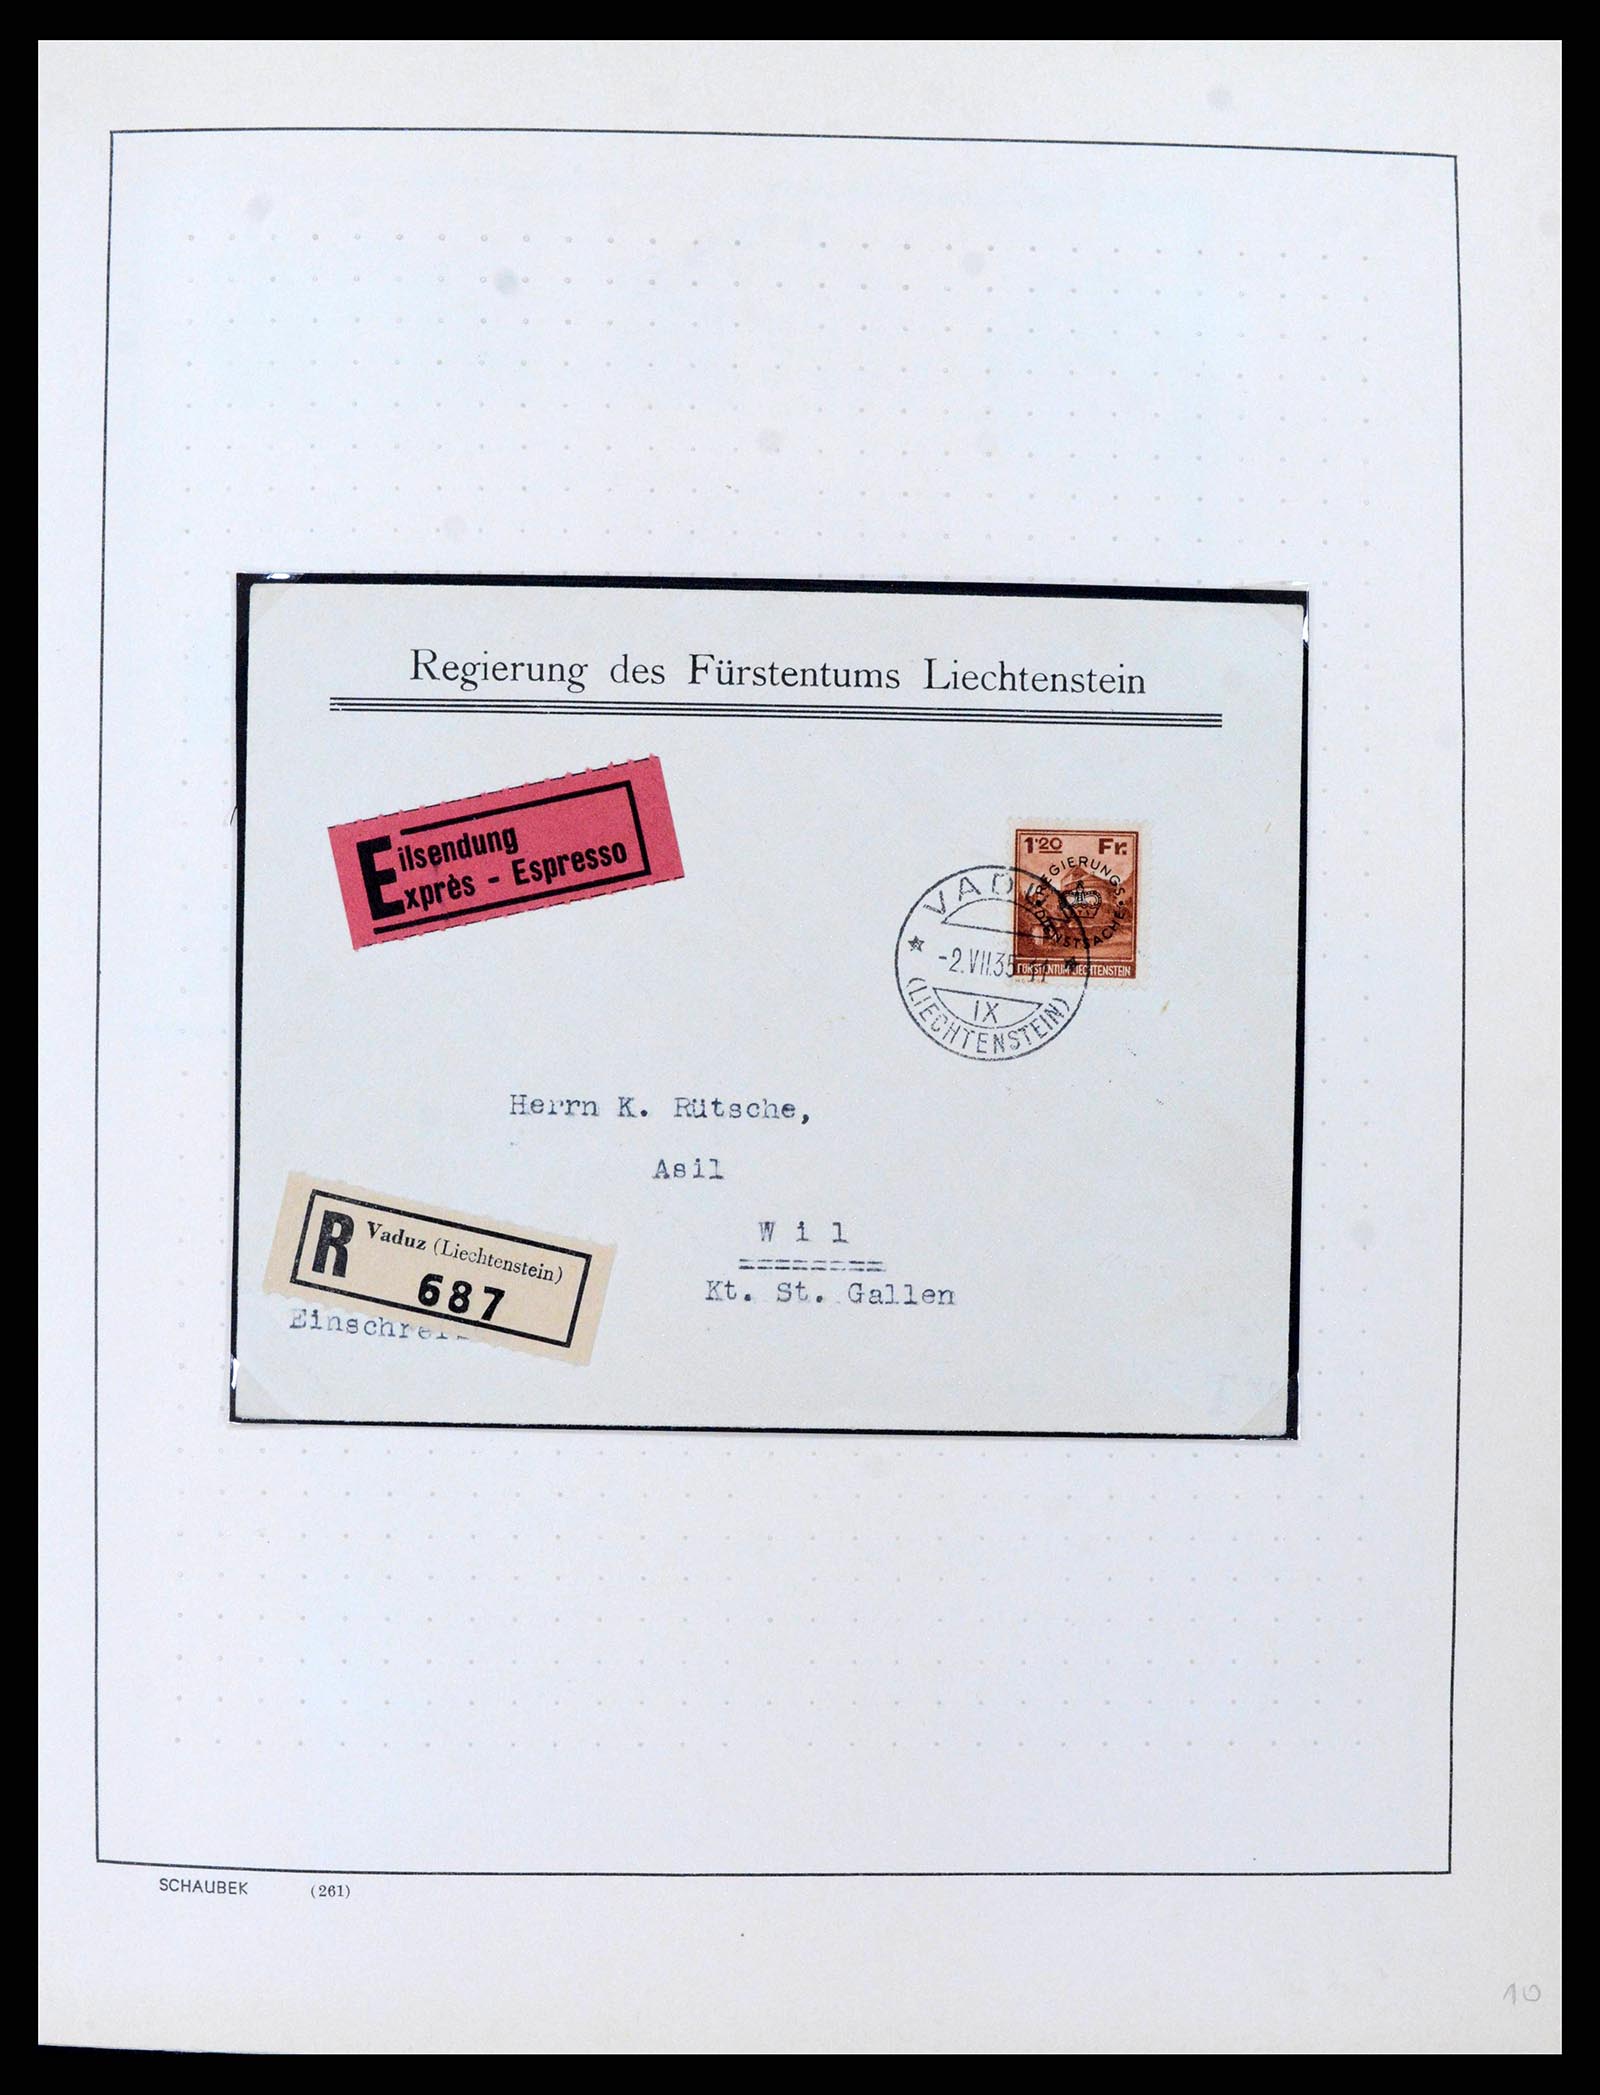 38204 0010 - Stamp collection 38204 Liechtenstein service covers 1932-1989.